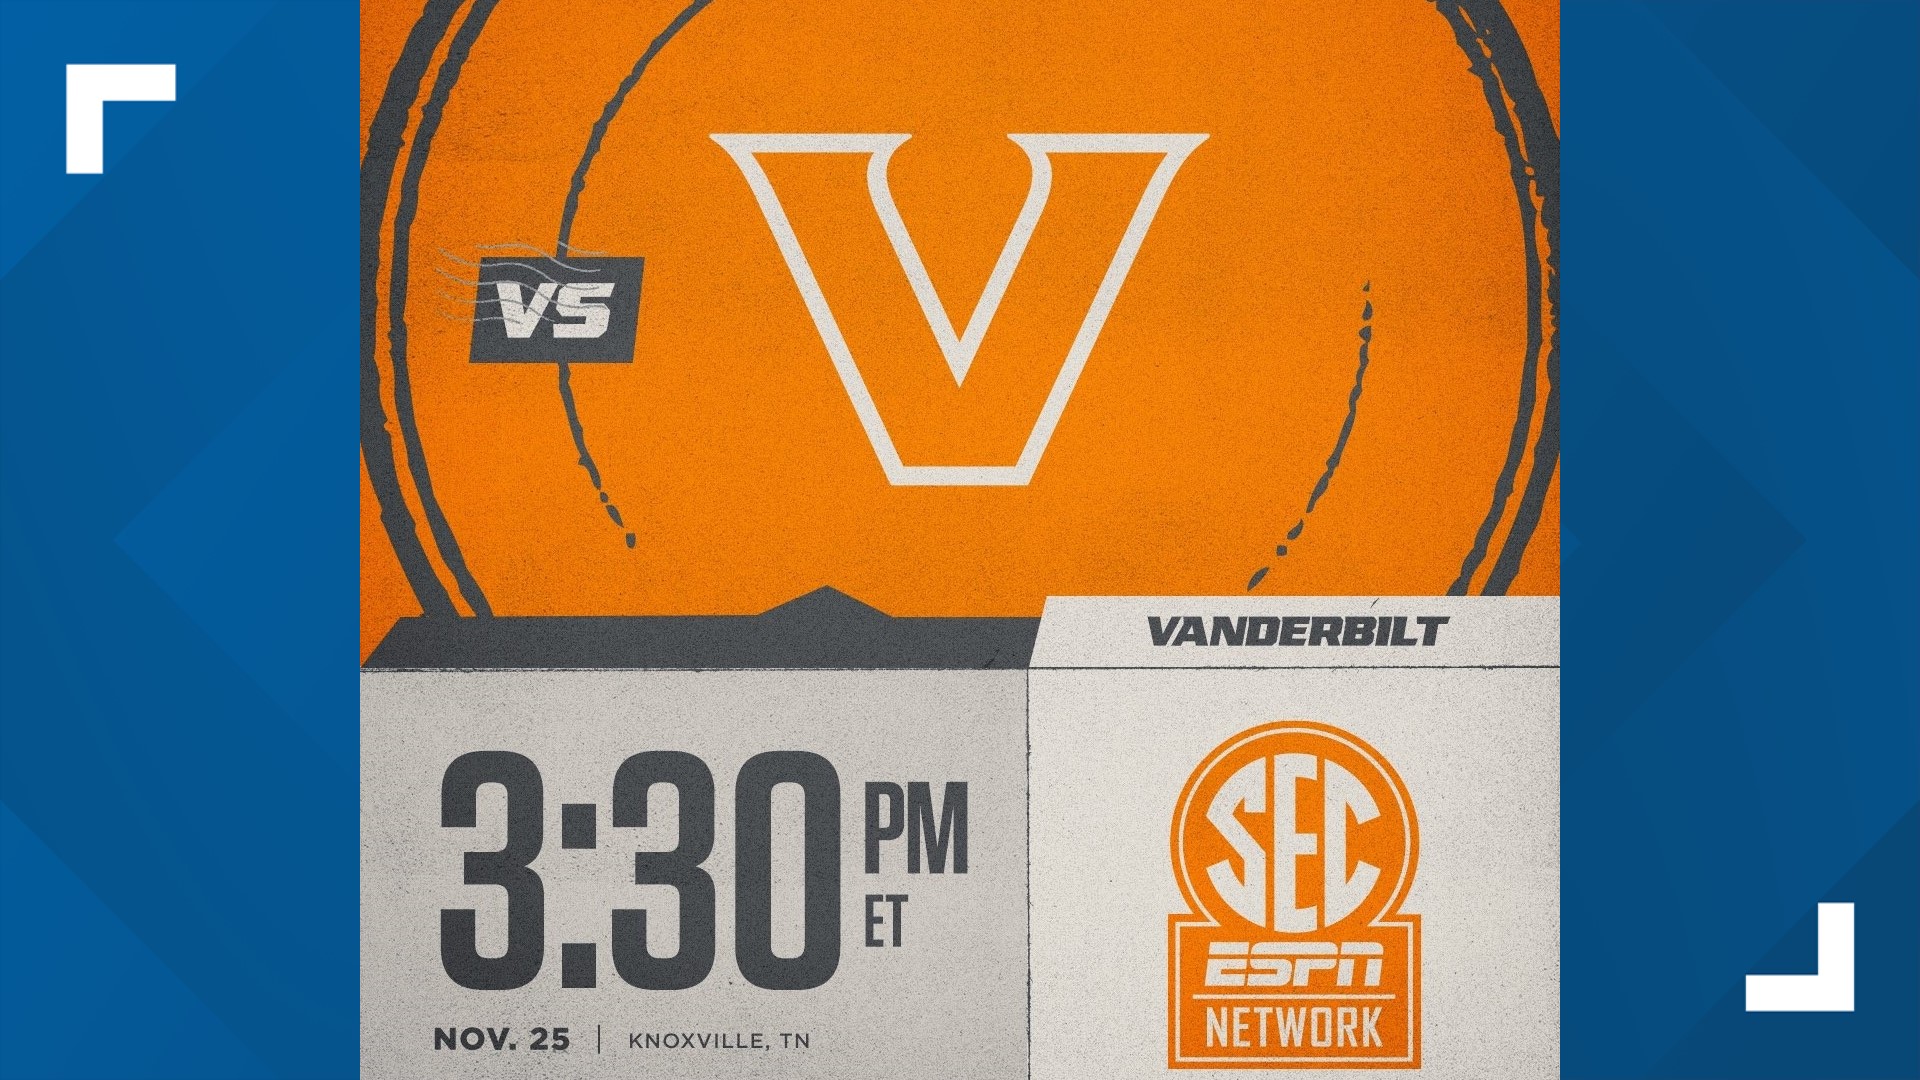 Kickoff time announced for UT vs. Vanderbilt game on Nov. 25